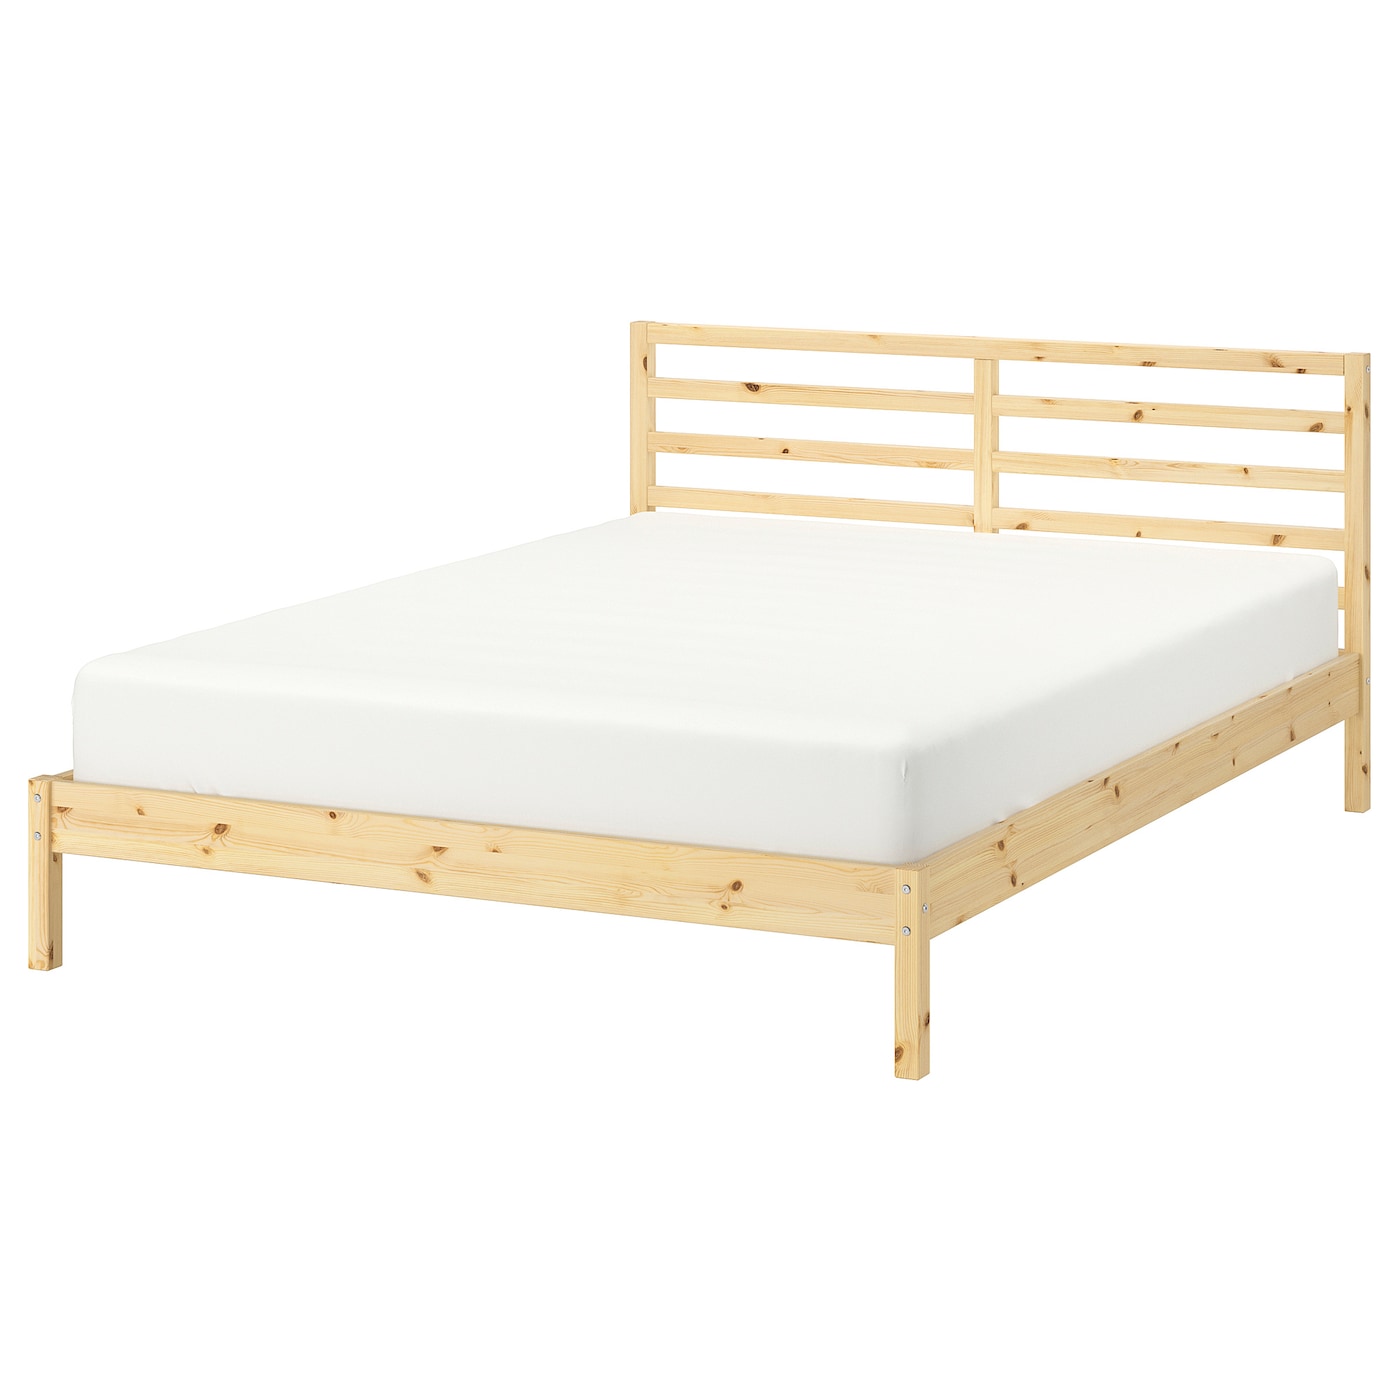 Двуспальная кровать - IKEA TARVA/LINDBÅDEN/LINDBADEN, 200х140 см, сосна, ТАРВА/ЛИНДБАДЕН ИКЕА